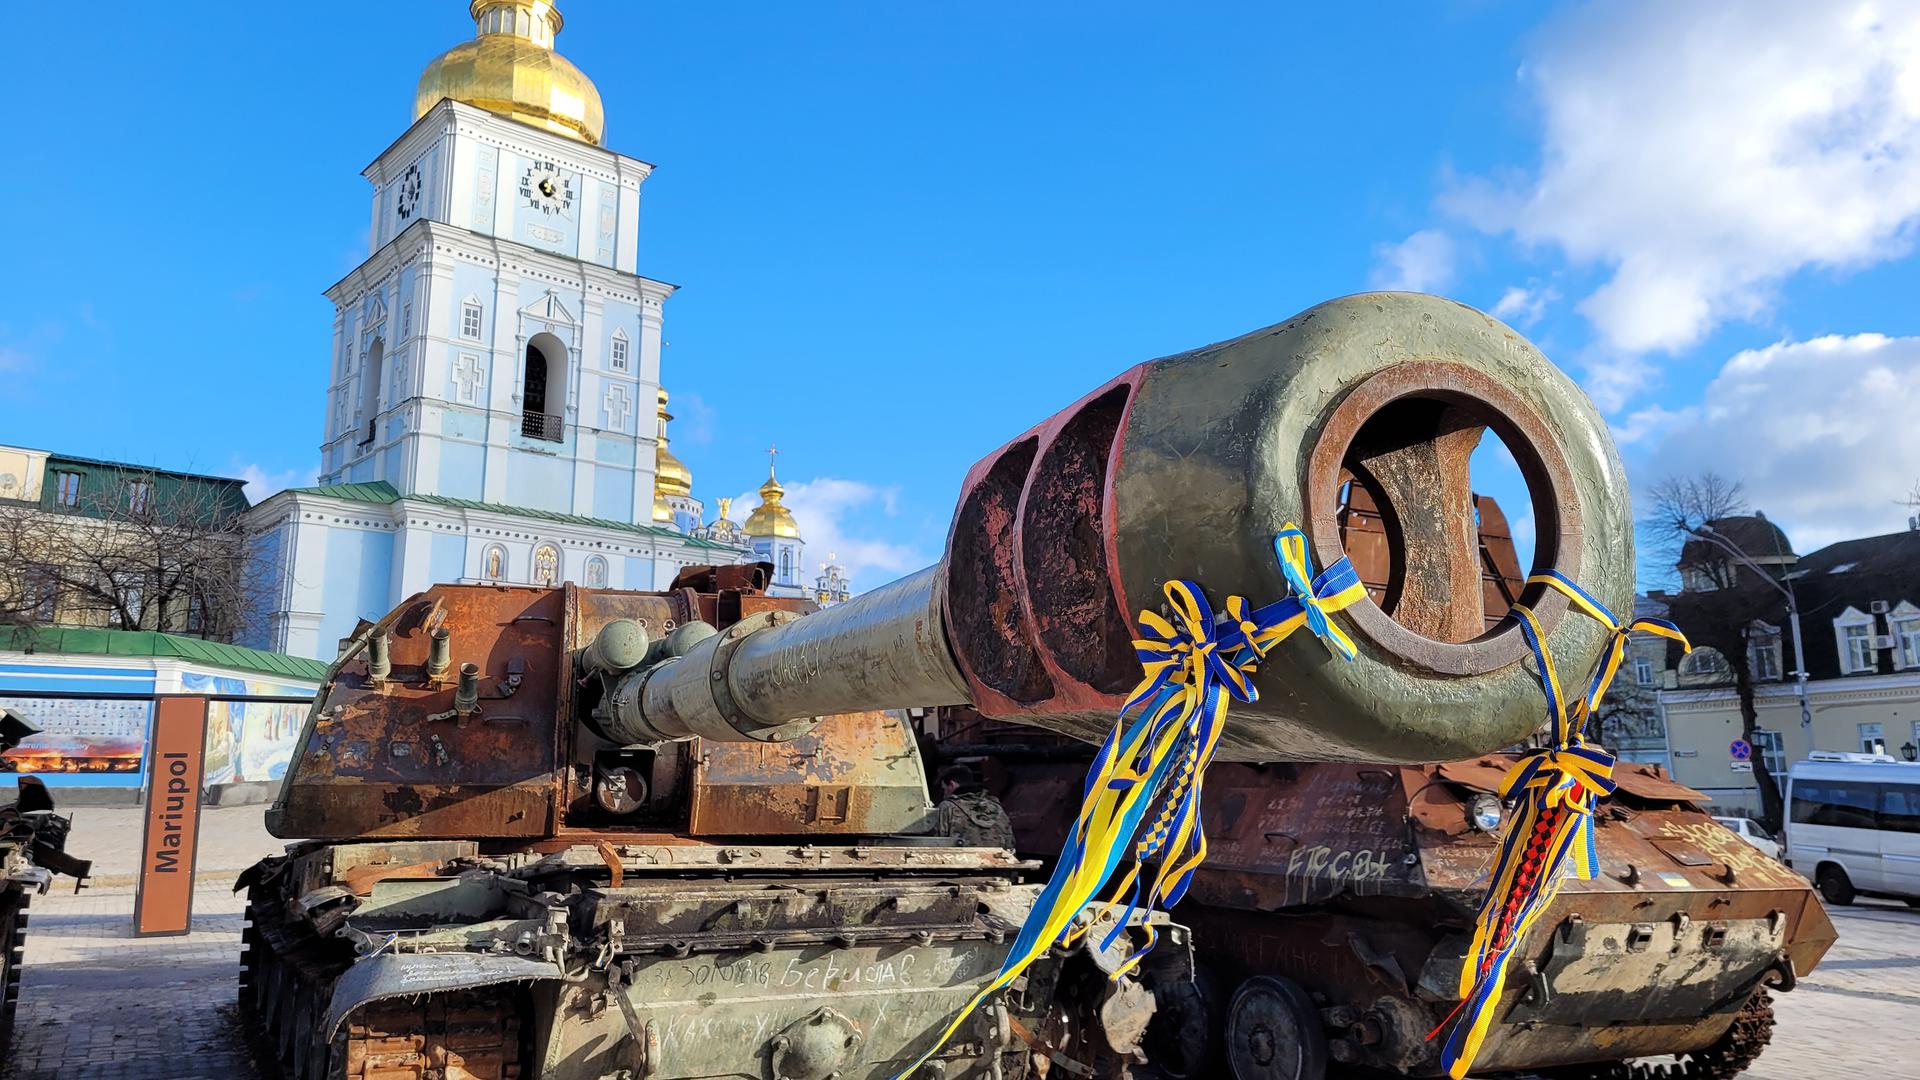 De même, des chars russes, des véhicules civils détruits et d'autres témoignages de la guerre se trouvent actuellement devant le célèbre monastère Saint-Michel à Kiev.